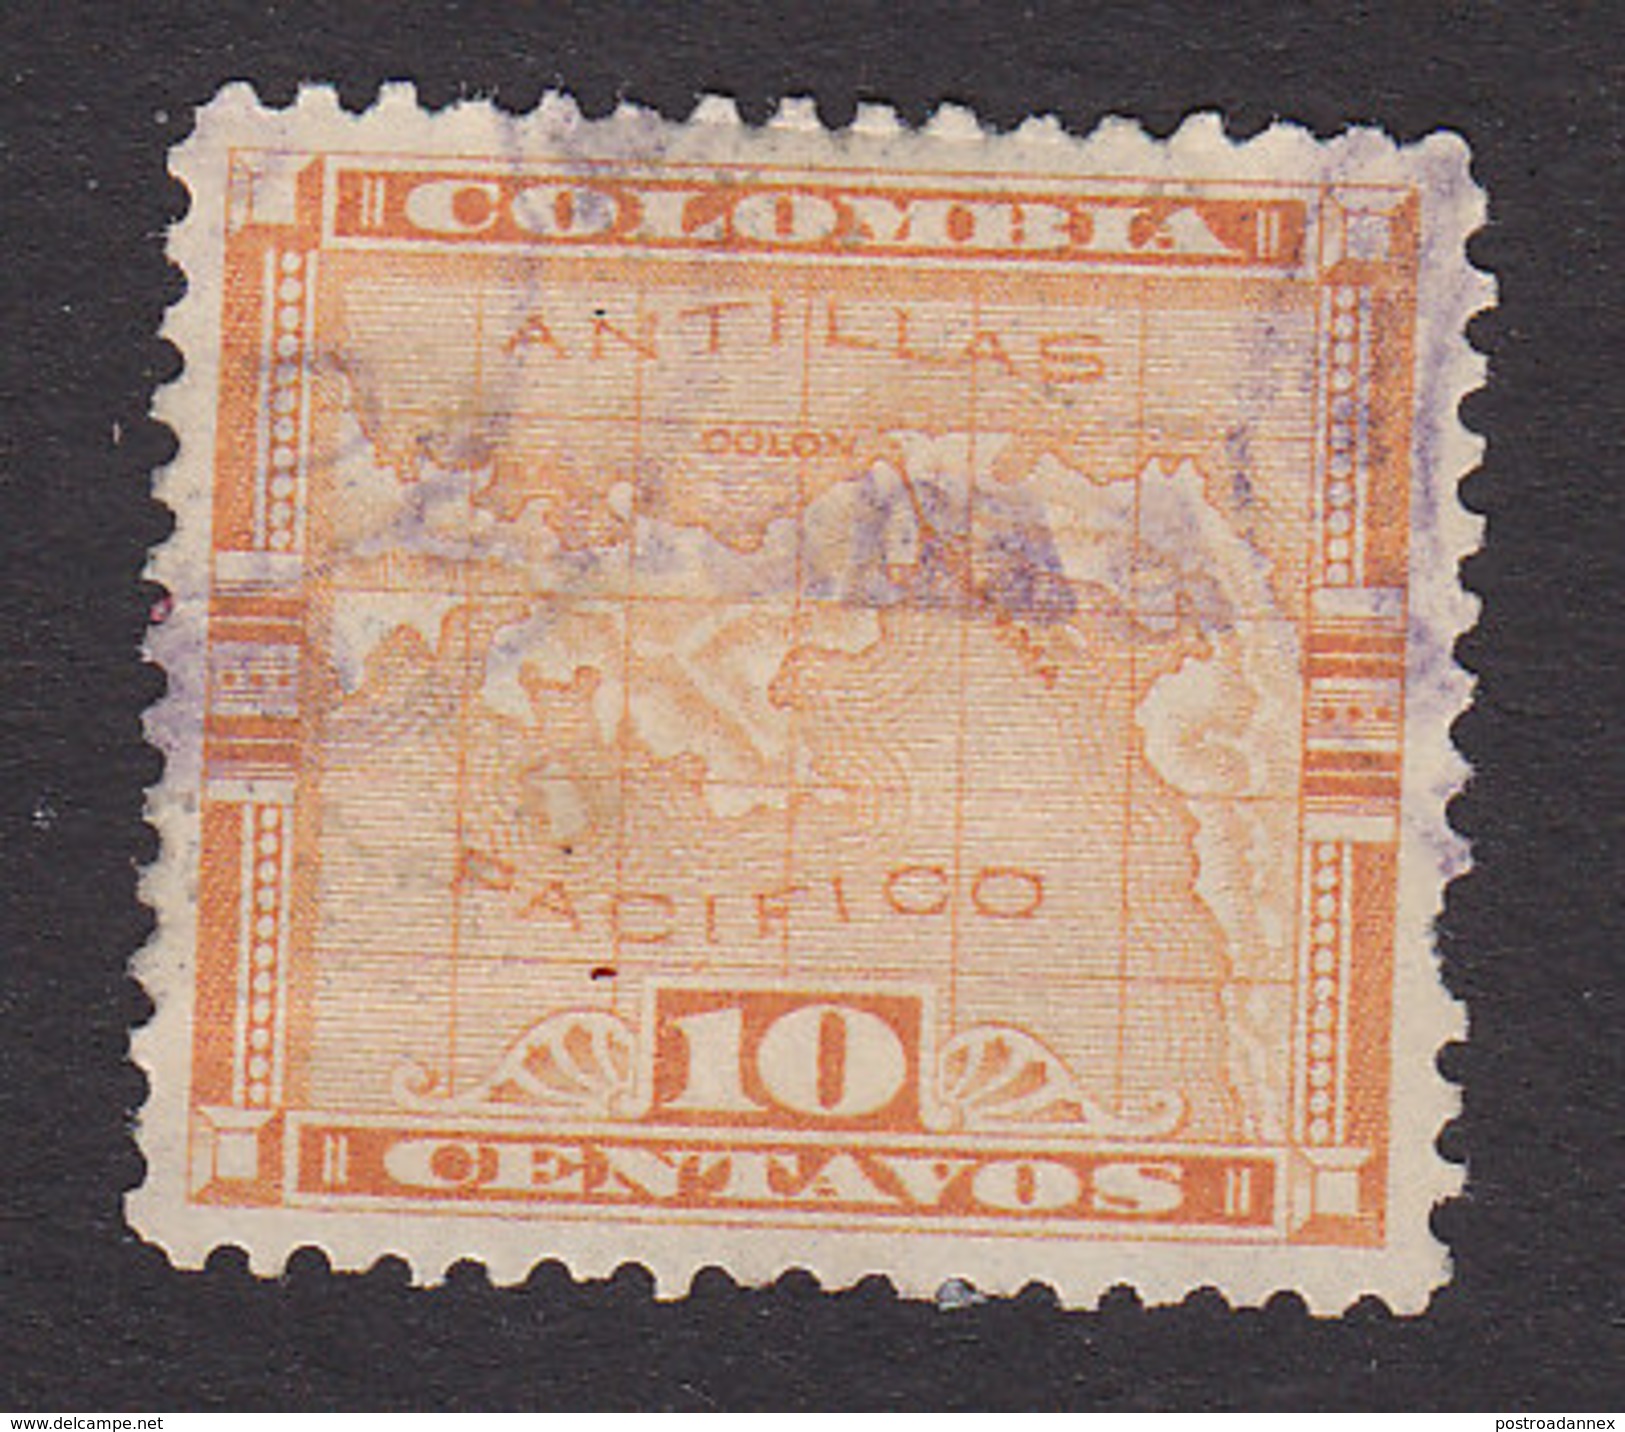 Panama, Scott #161, Used, Map Overprinted, Issued 1903 - Panama